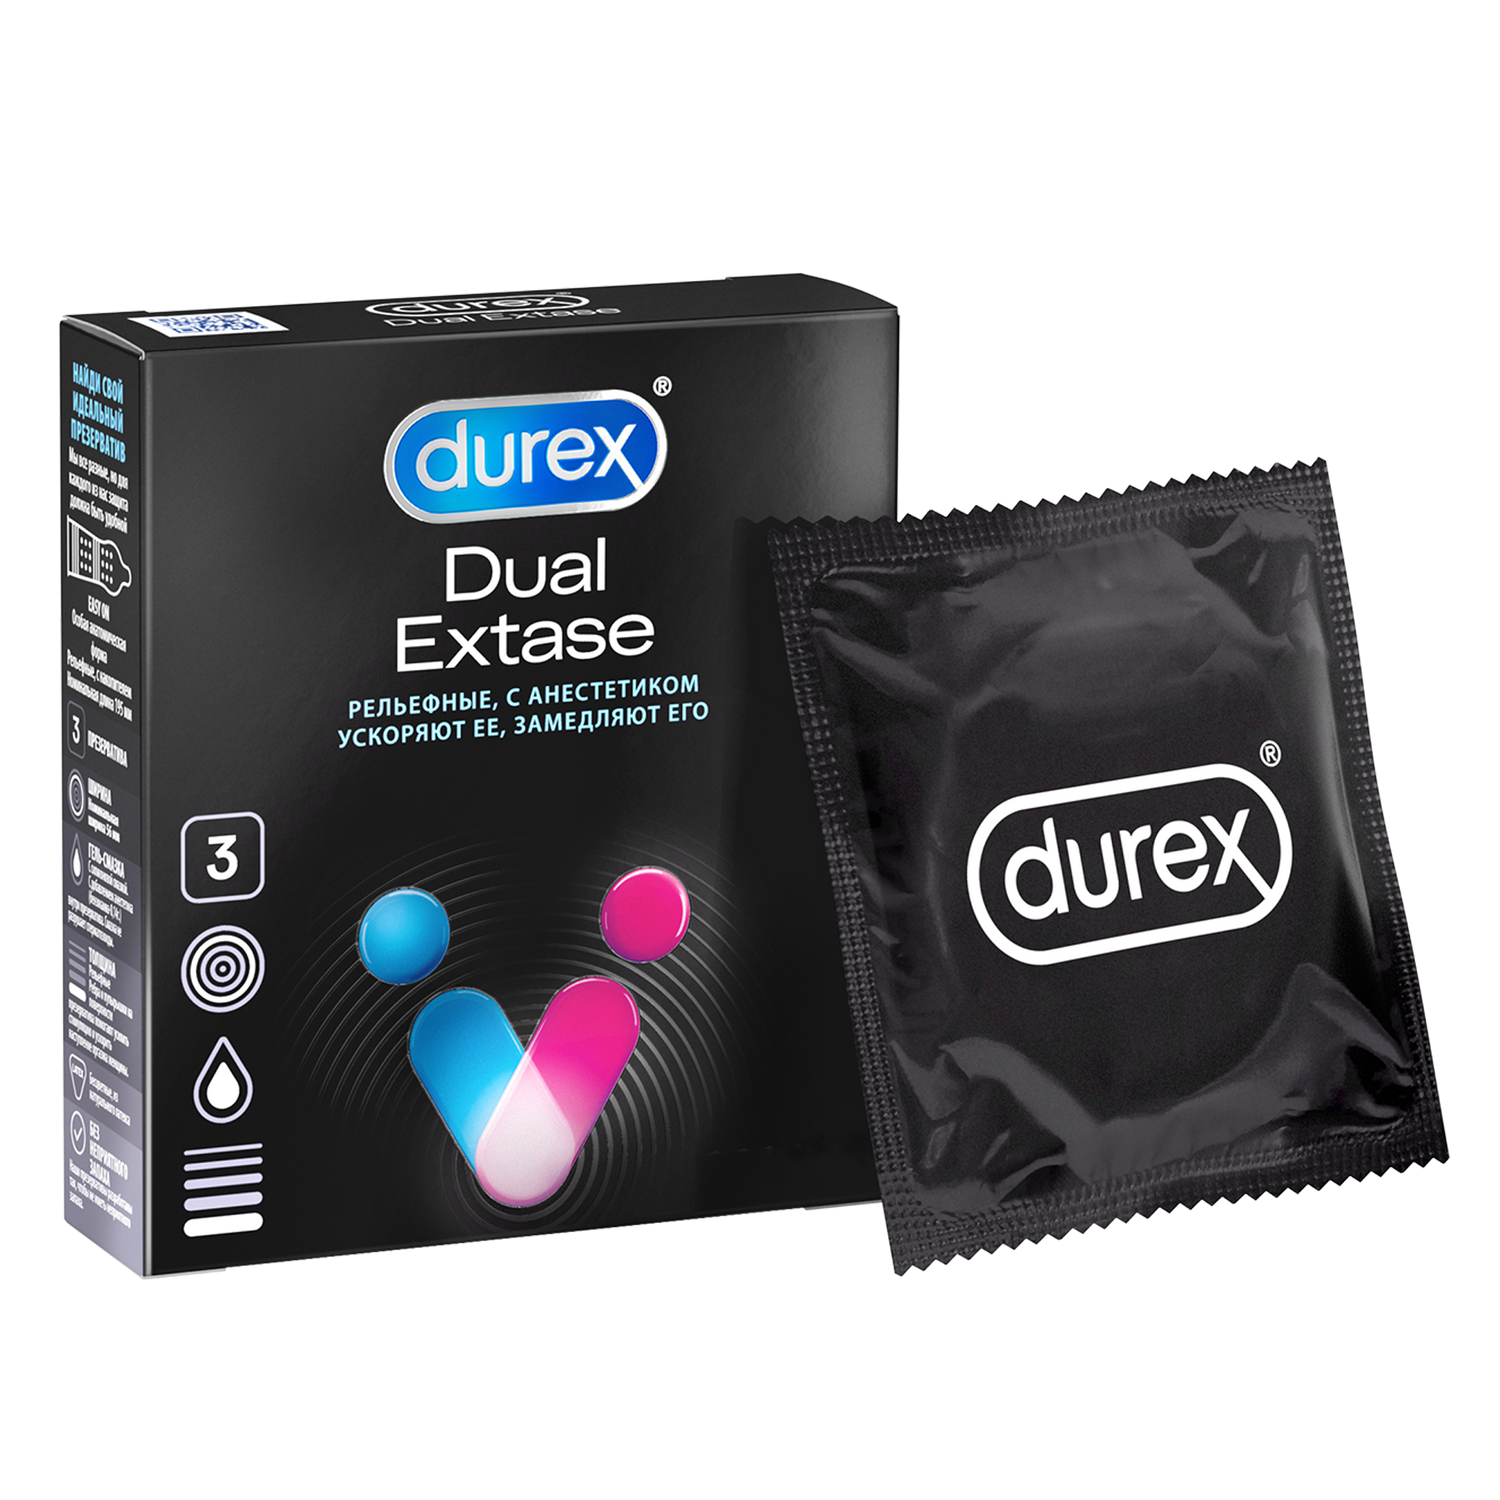 Презервативы Durex Dual Extase, рельефные с анестетиком, 3 шт. презервативы durex intense orgasmic 12 шт